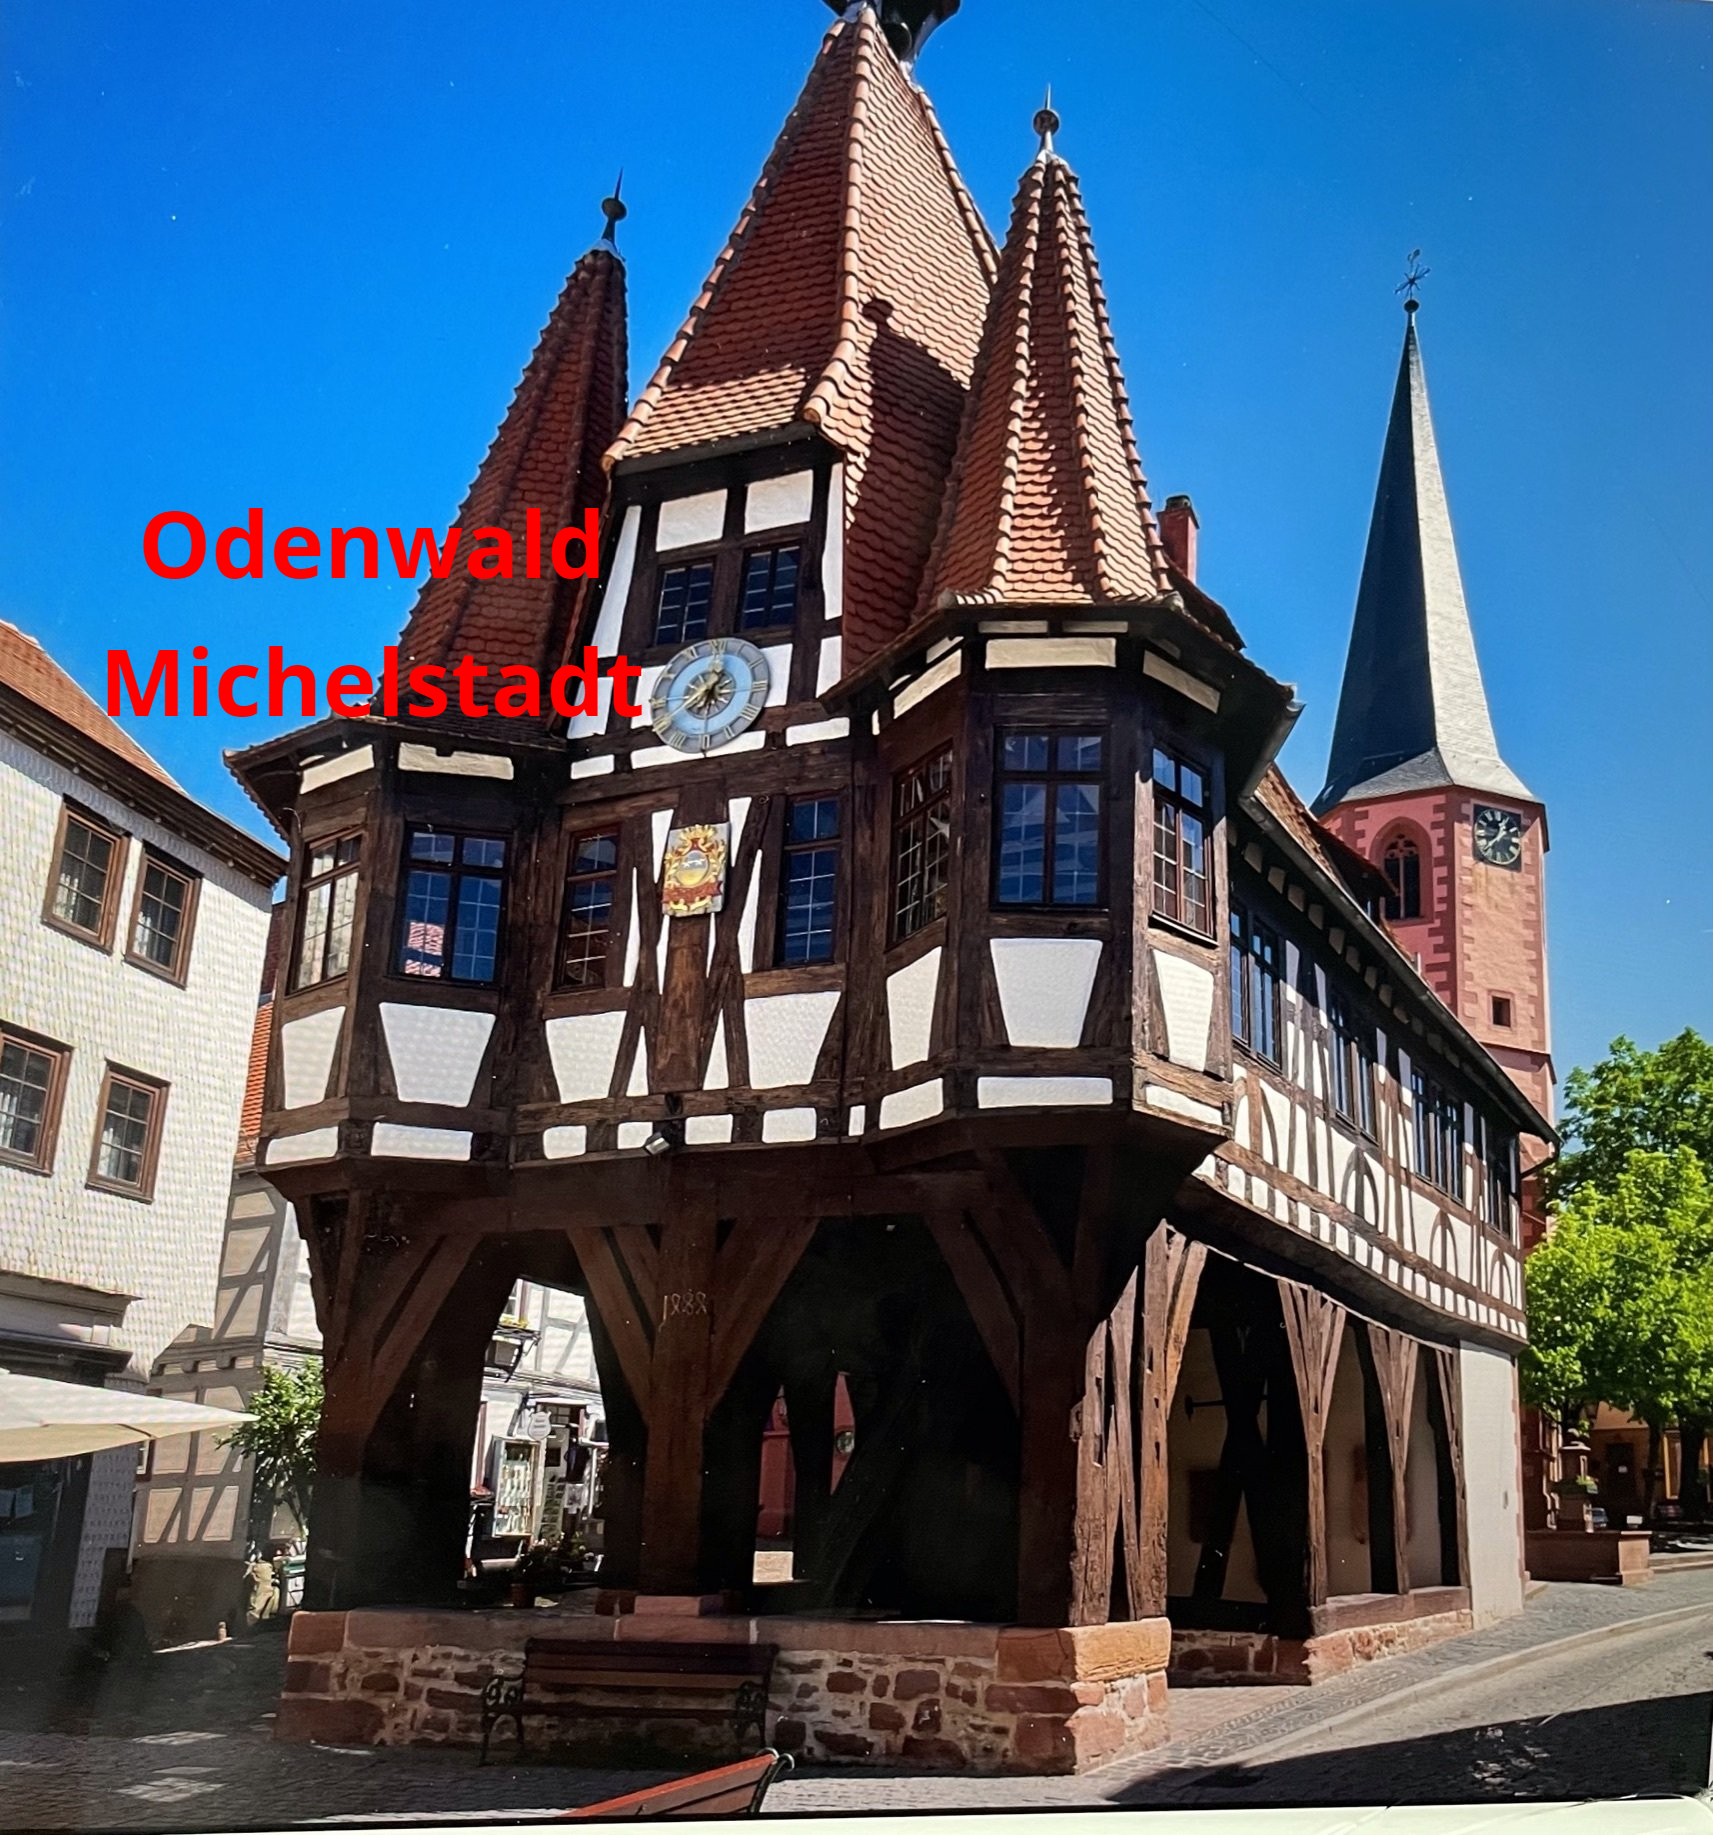 Michelstadt, Odenwald